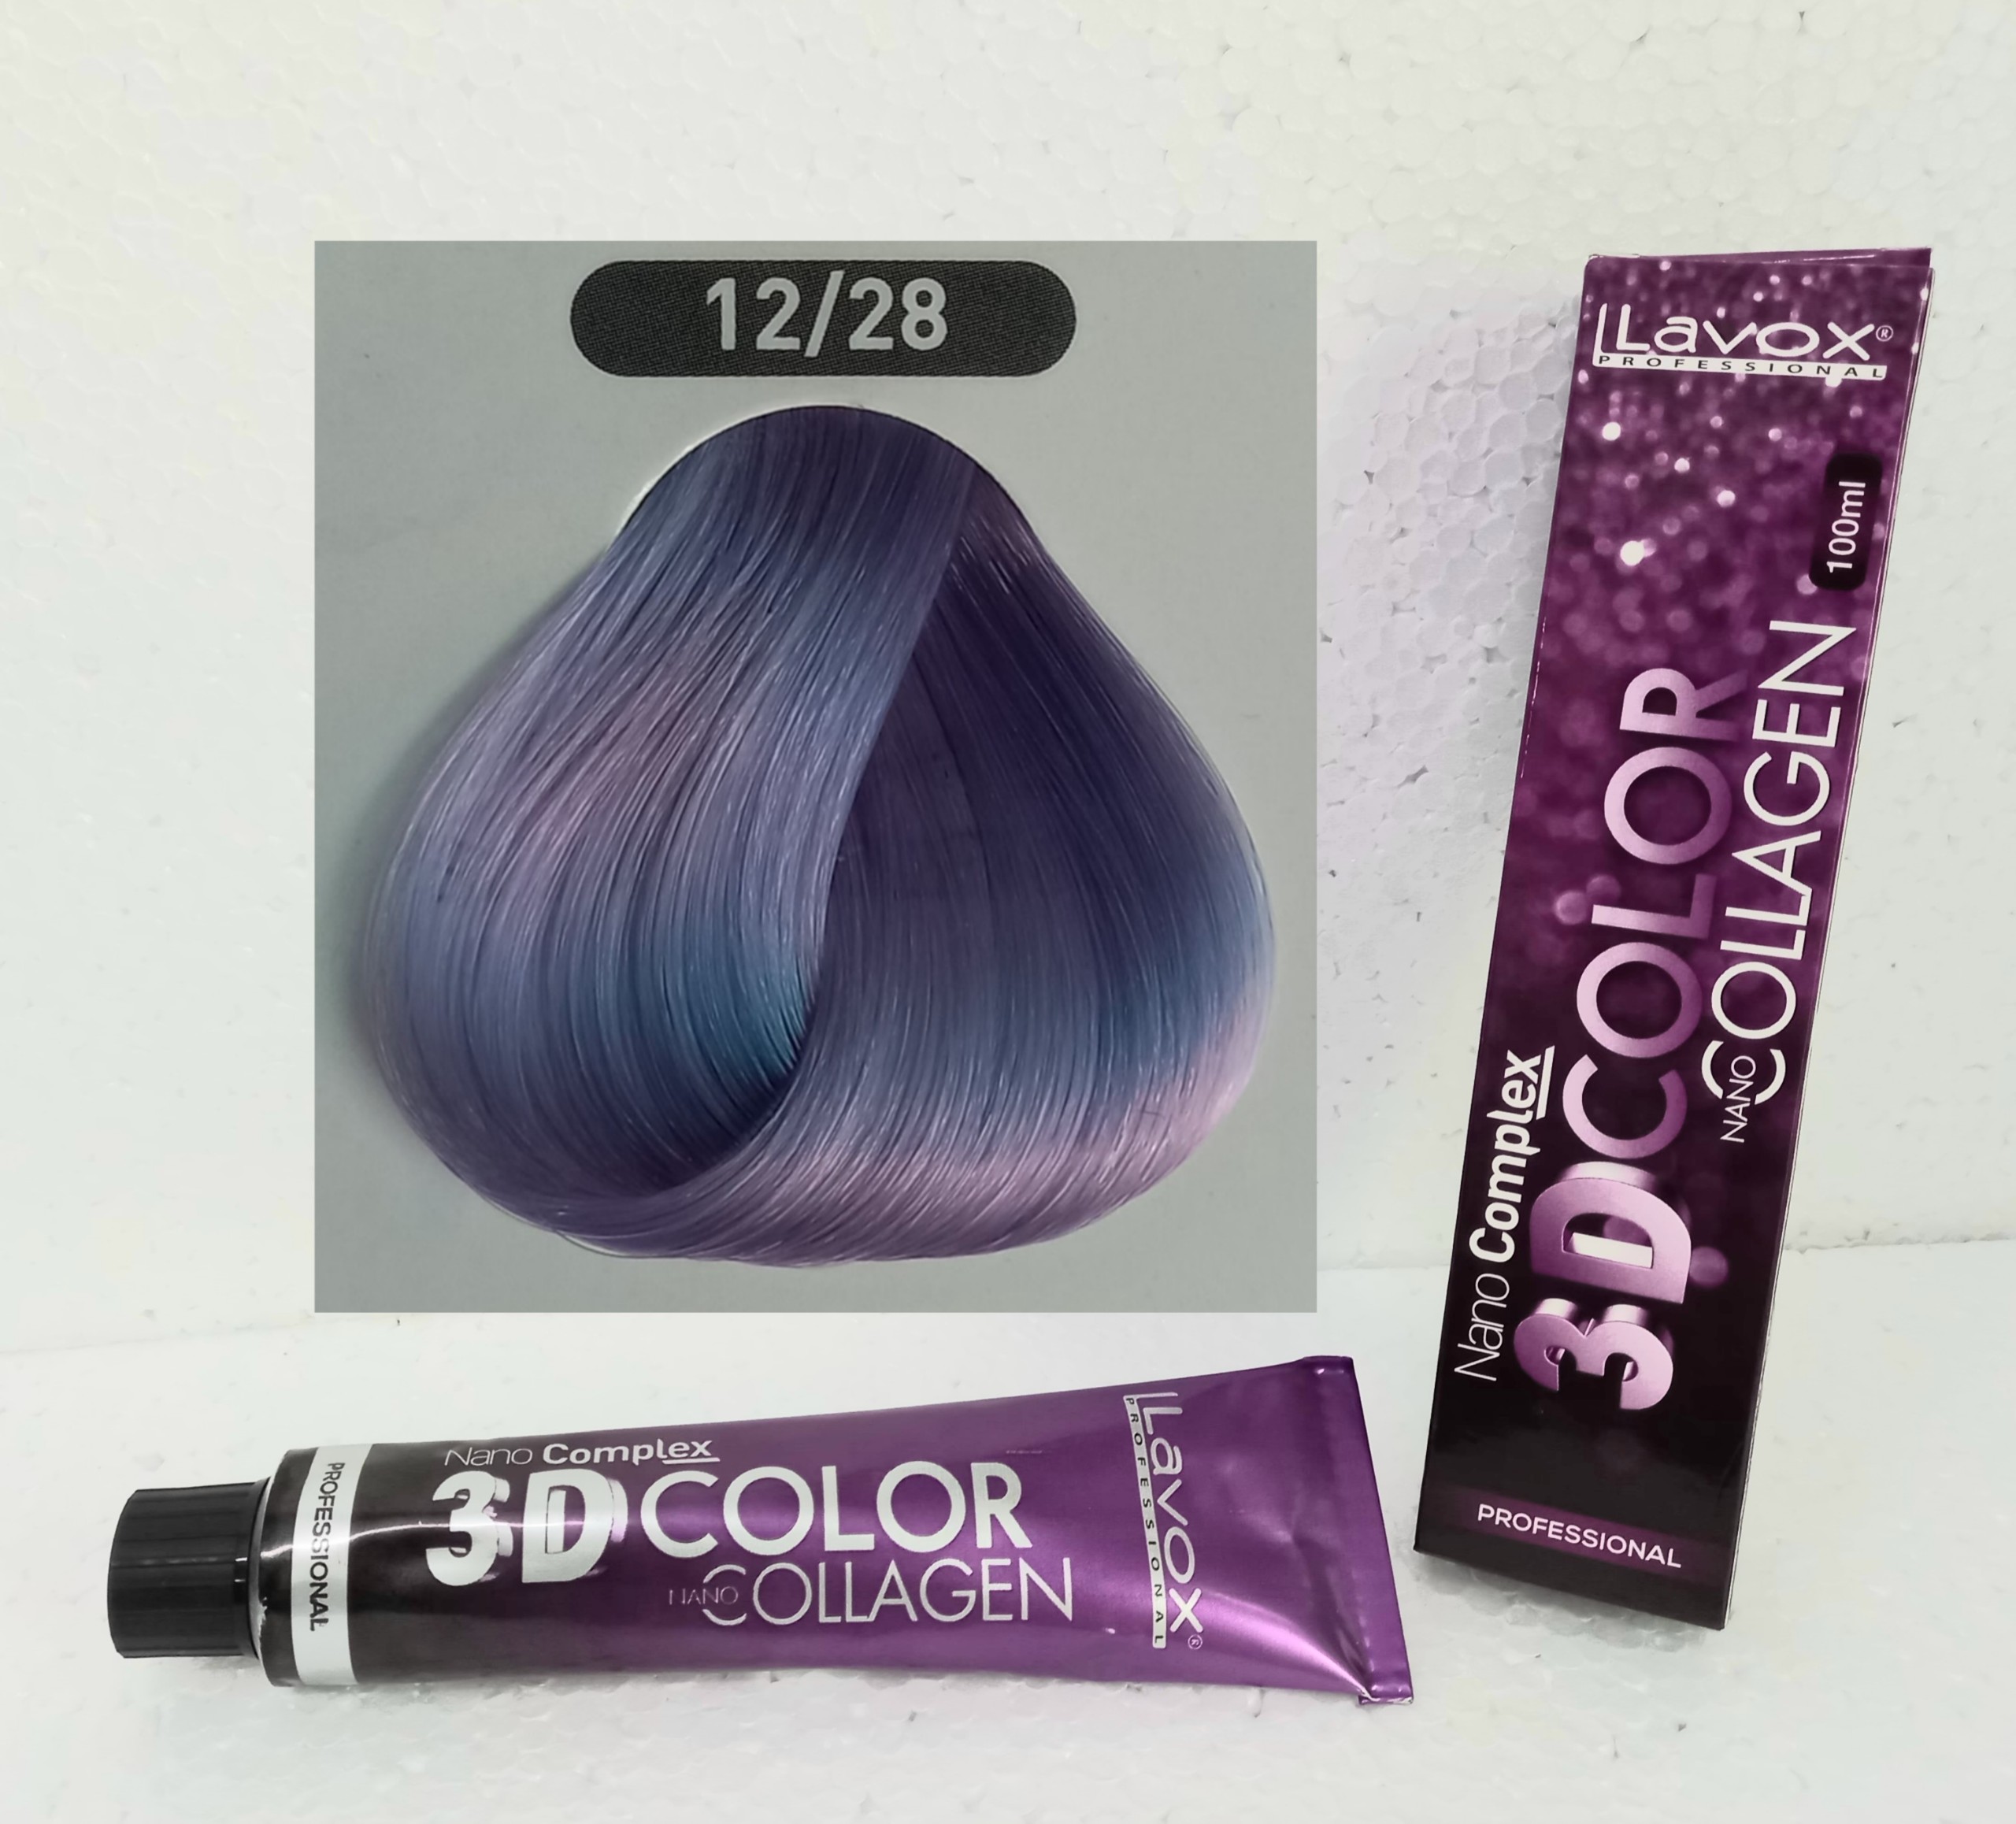 Nhuộm tóc lavox màu trà sữa (TẶNG KÈM OXY TRỢ NHUỘM) nhuộm Lavox tím 3D Collagen hot trend color